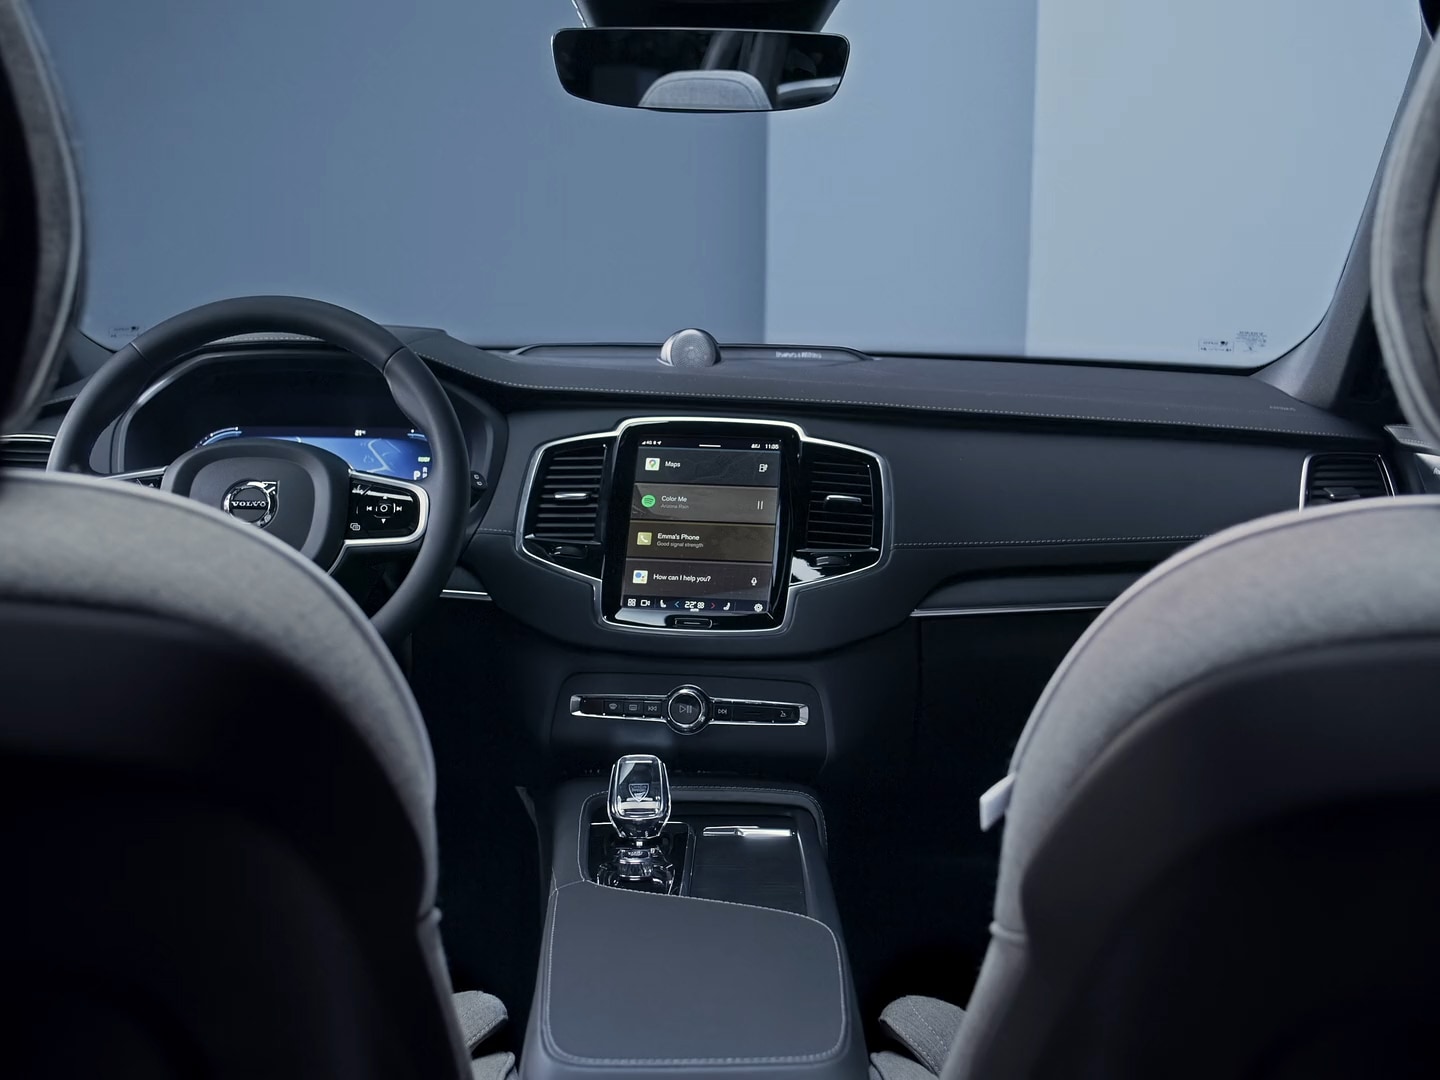 Lenkrad, Instrumententafel, Infotainment-Touchscreen und Mittelkonsole des Volvo XC90 Plug-in Hybrid.